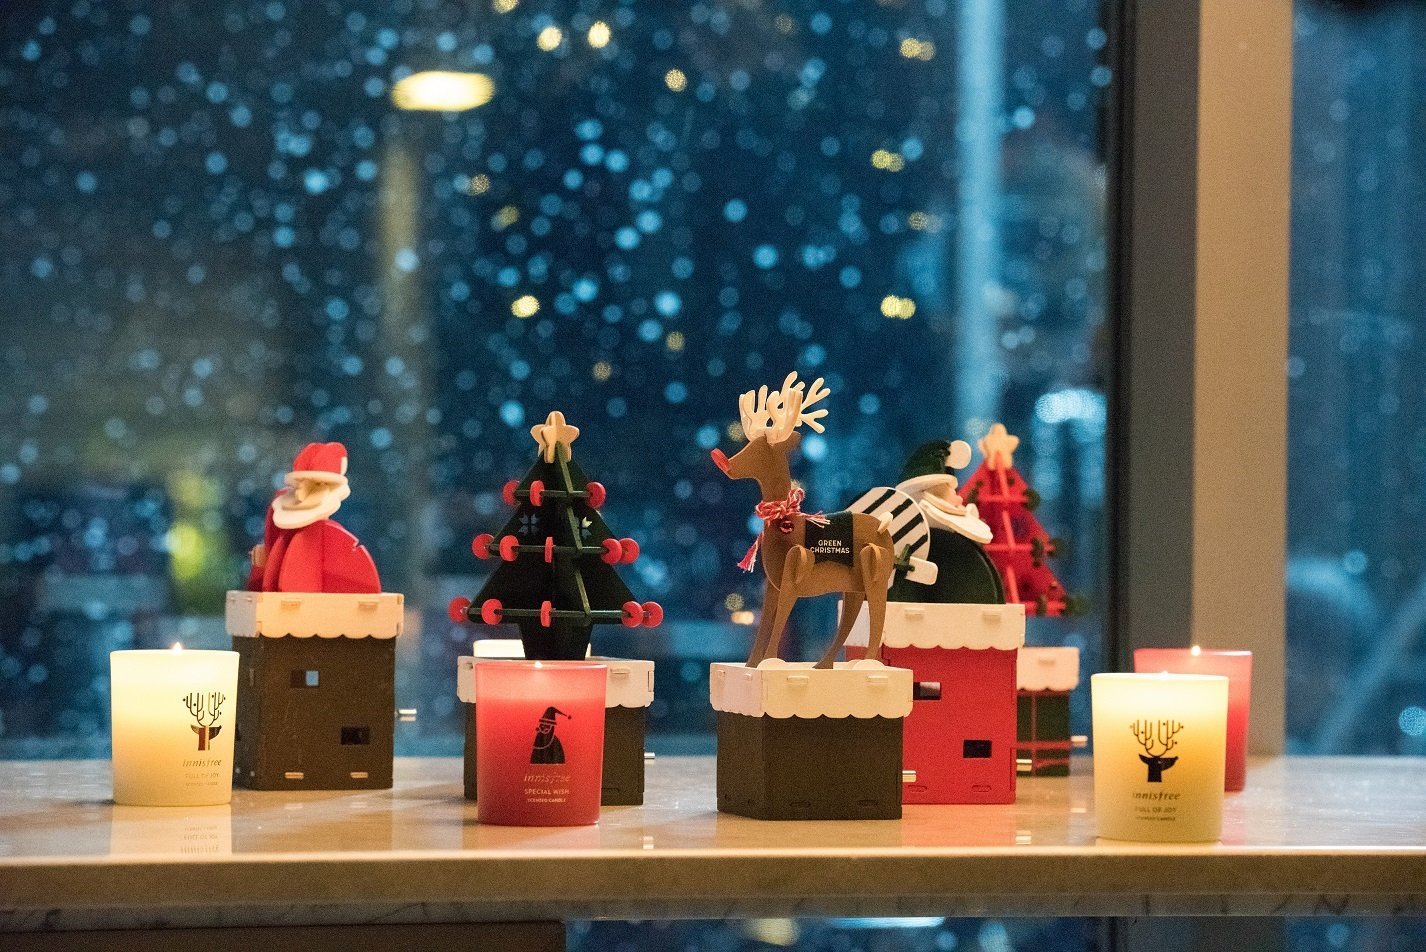 2016年的手作音乐盒组件由白桦木制成，圣诞老人、圣诞树和麋鹿3个款式的曲目皆不同，分别是《Jingle Bells》、《I Wish You A Merry Christmas》和《Joy To The World》，诚意十足，消费者的心很难不被打动。